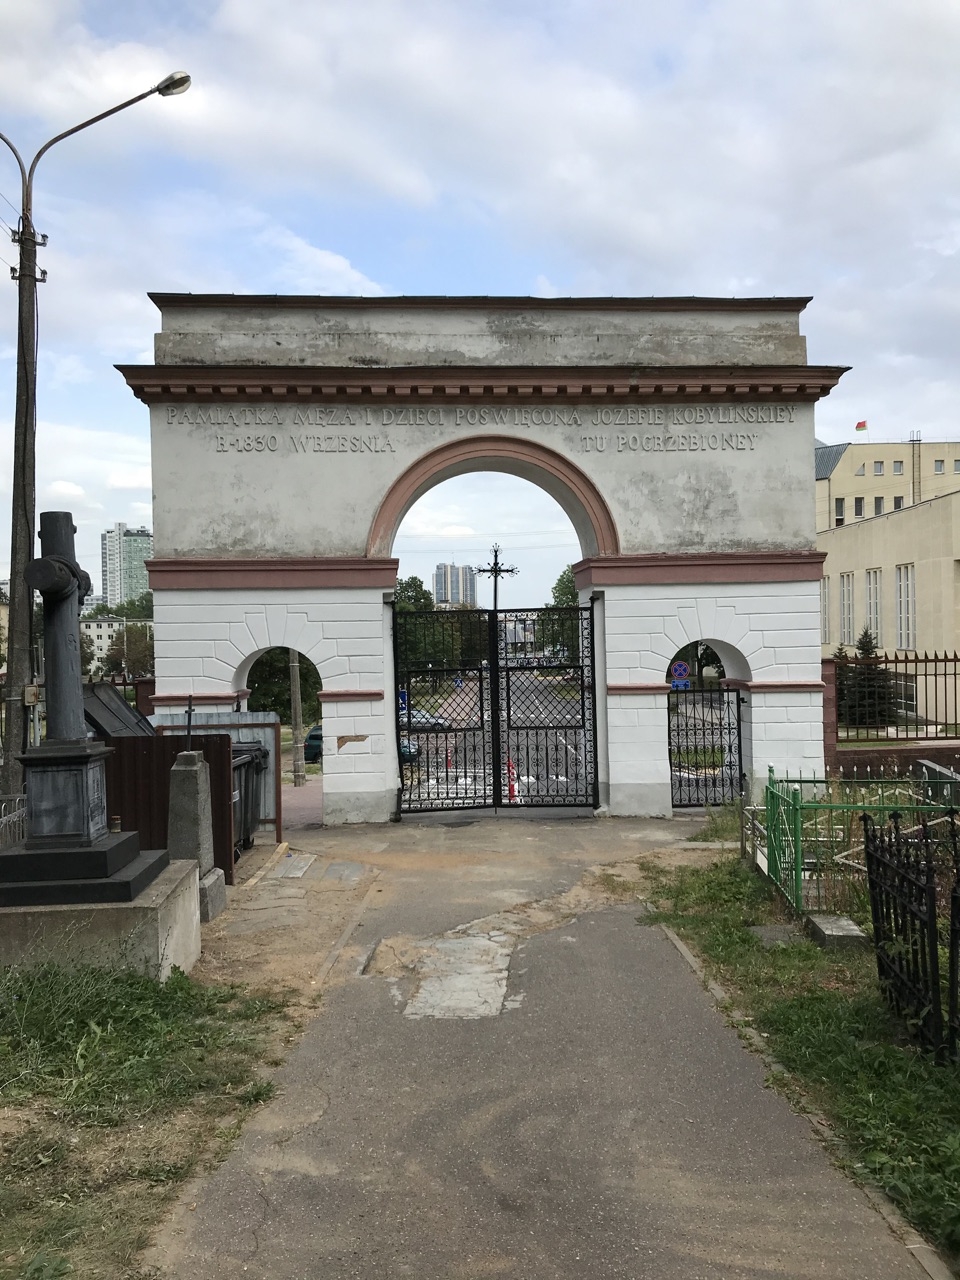 Надпись изнутри на воротах: память мужа и детей, посвящённая Юзефе Кобылинской в сентябре 1830-го тут погребённой Минск, Беларусь